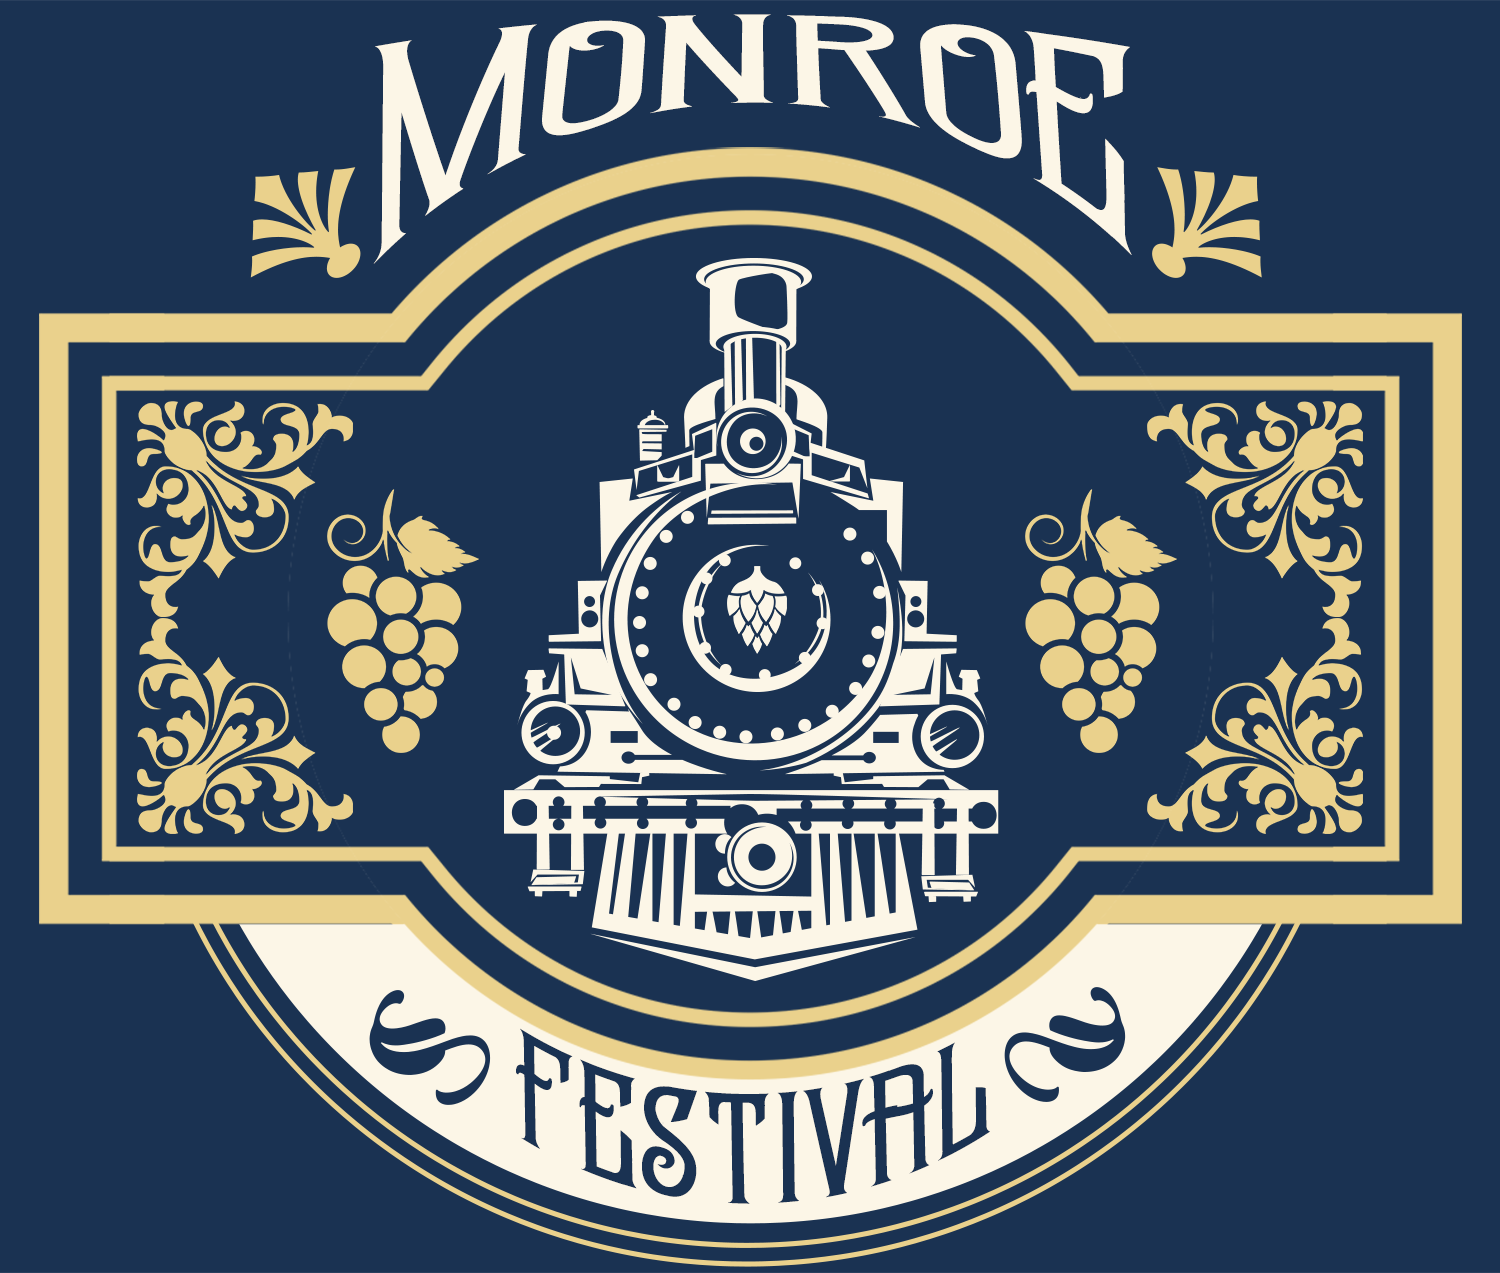 Monroe Oregon festival